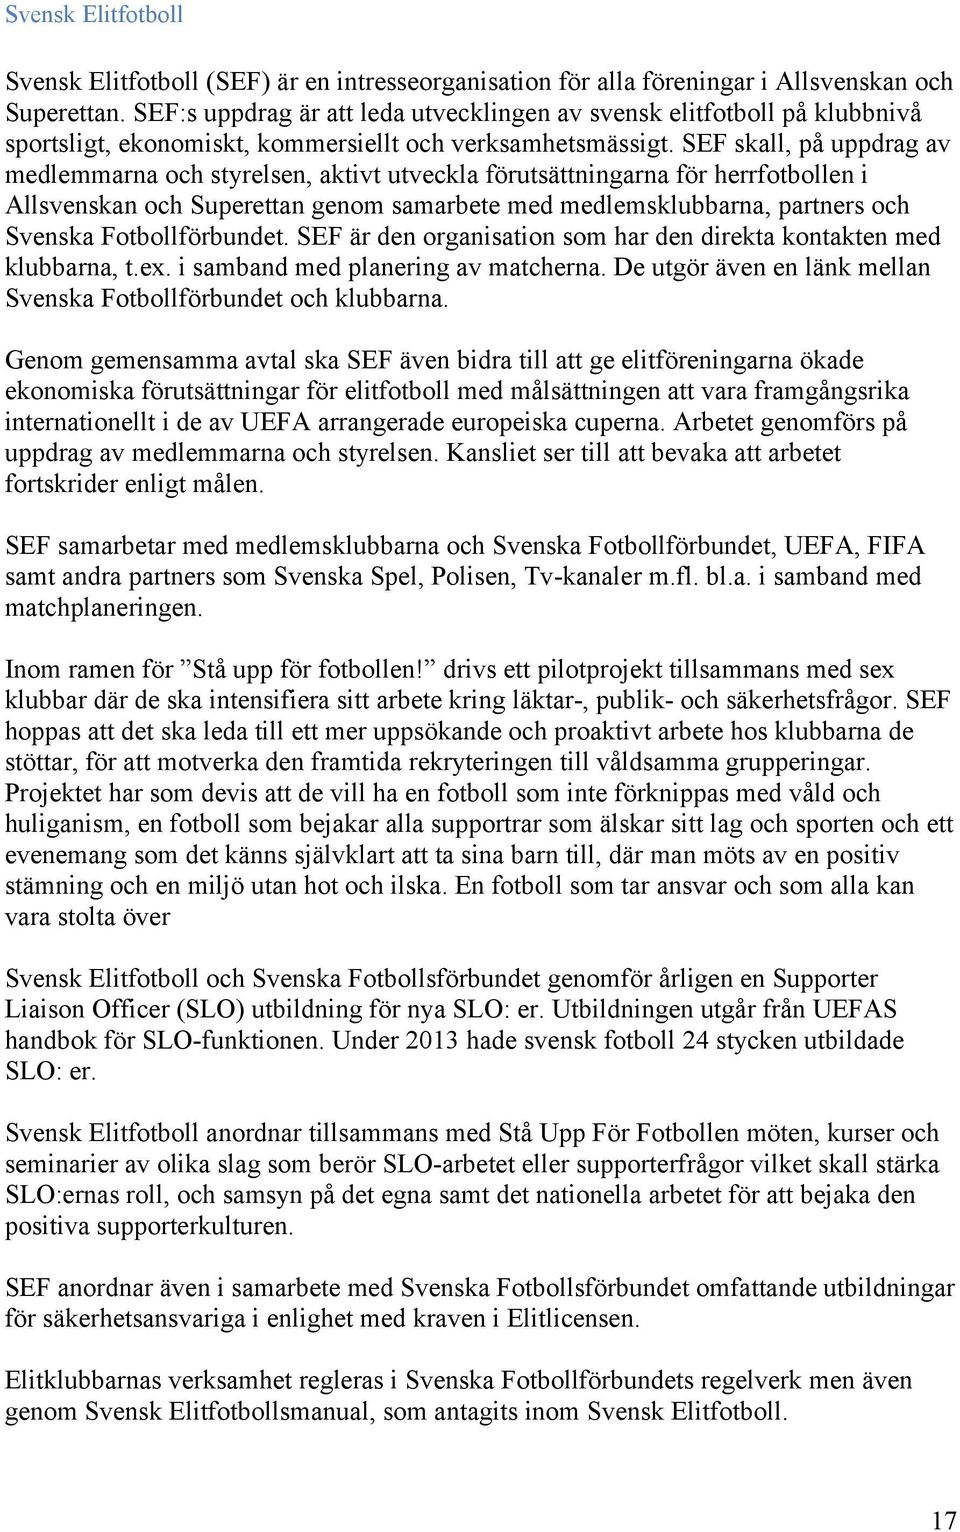 SEF skall, på uppdrag av medlemmarna och styrelsen, aktivt utveckla förutsättningarna för herrfotbollen i Allsvenskan och Superettan genom samarbete med medlemsklubbarna, partners och Svenska